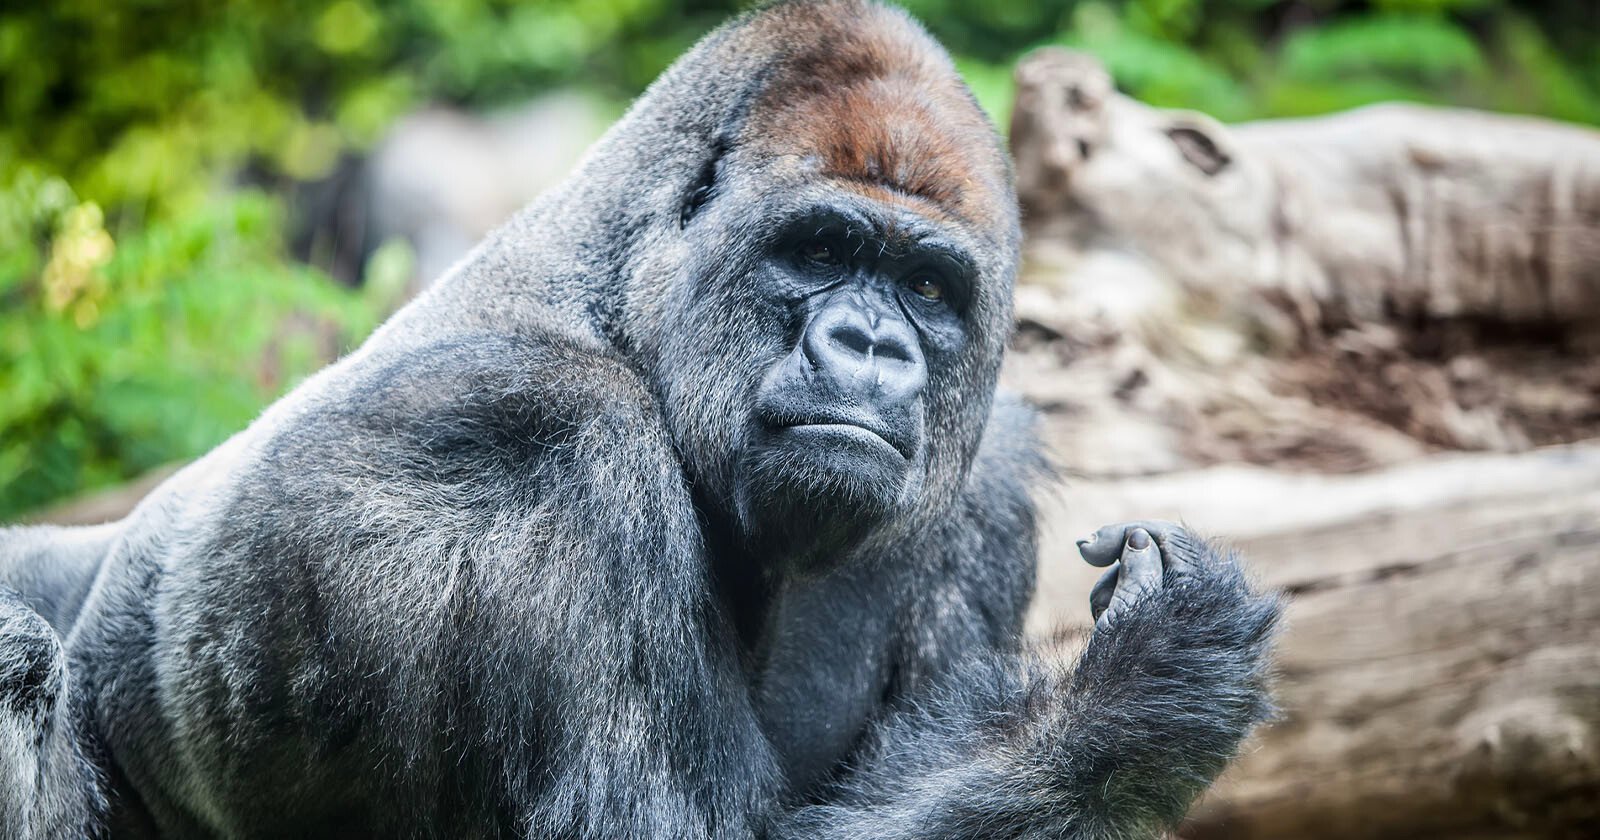 Googles Photos App is Still Unable to Find Gorillas